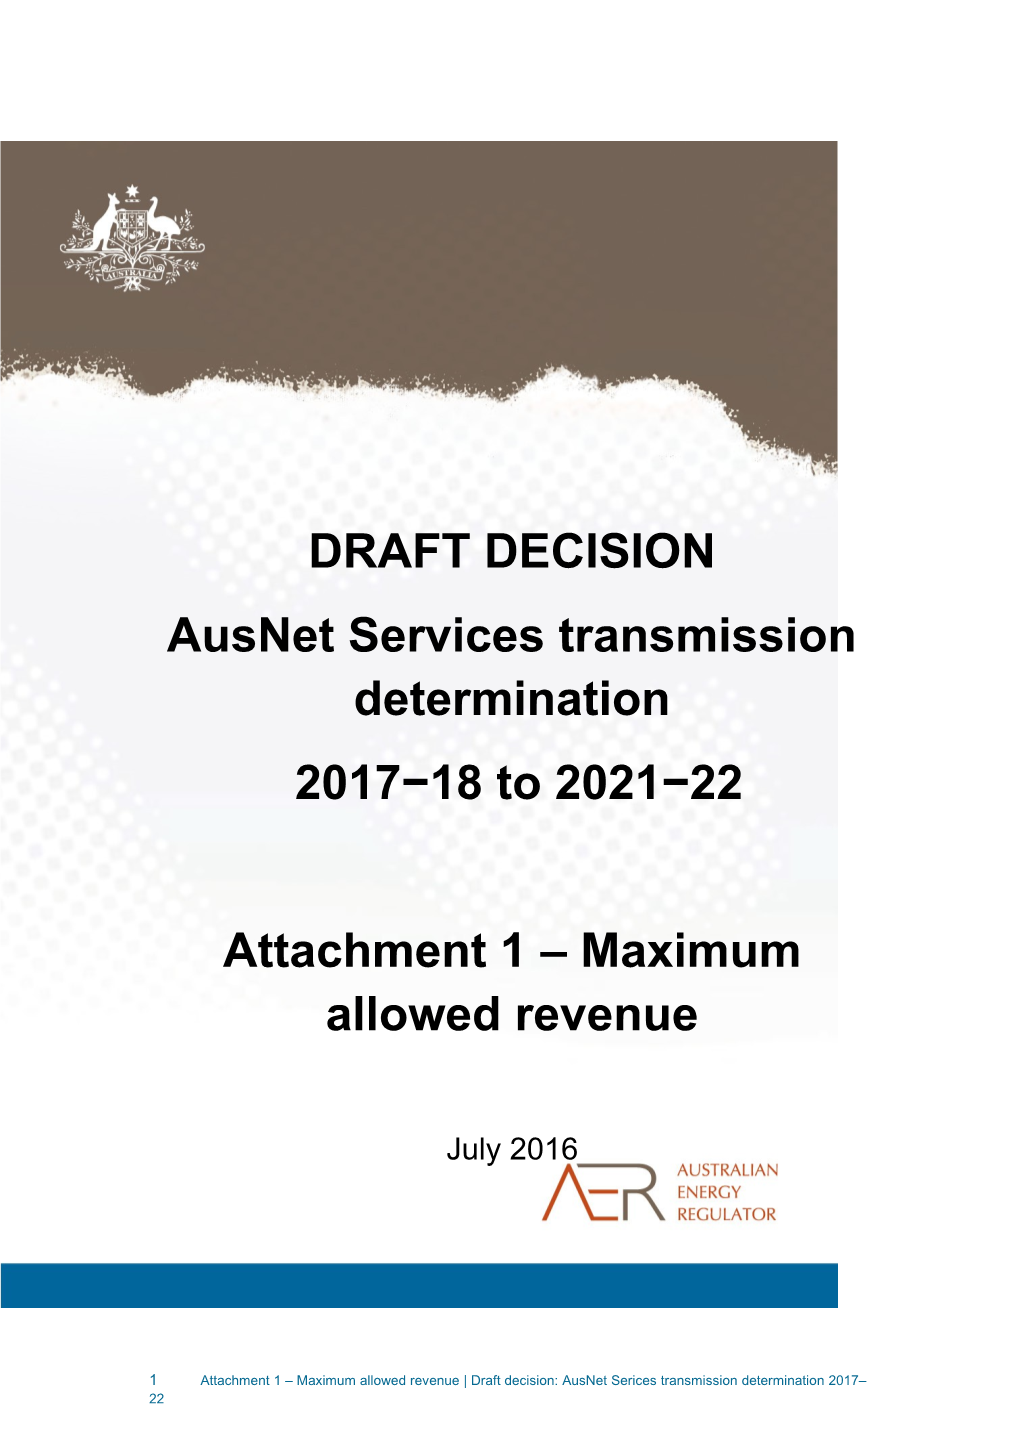 Ausnet Services 2017-22 - Draft Decision - Attachment 1 - Maximum Allowed Revenue